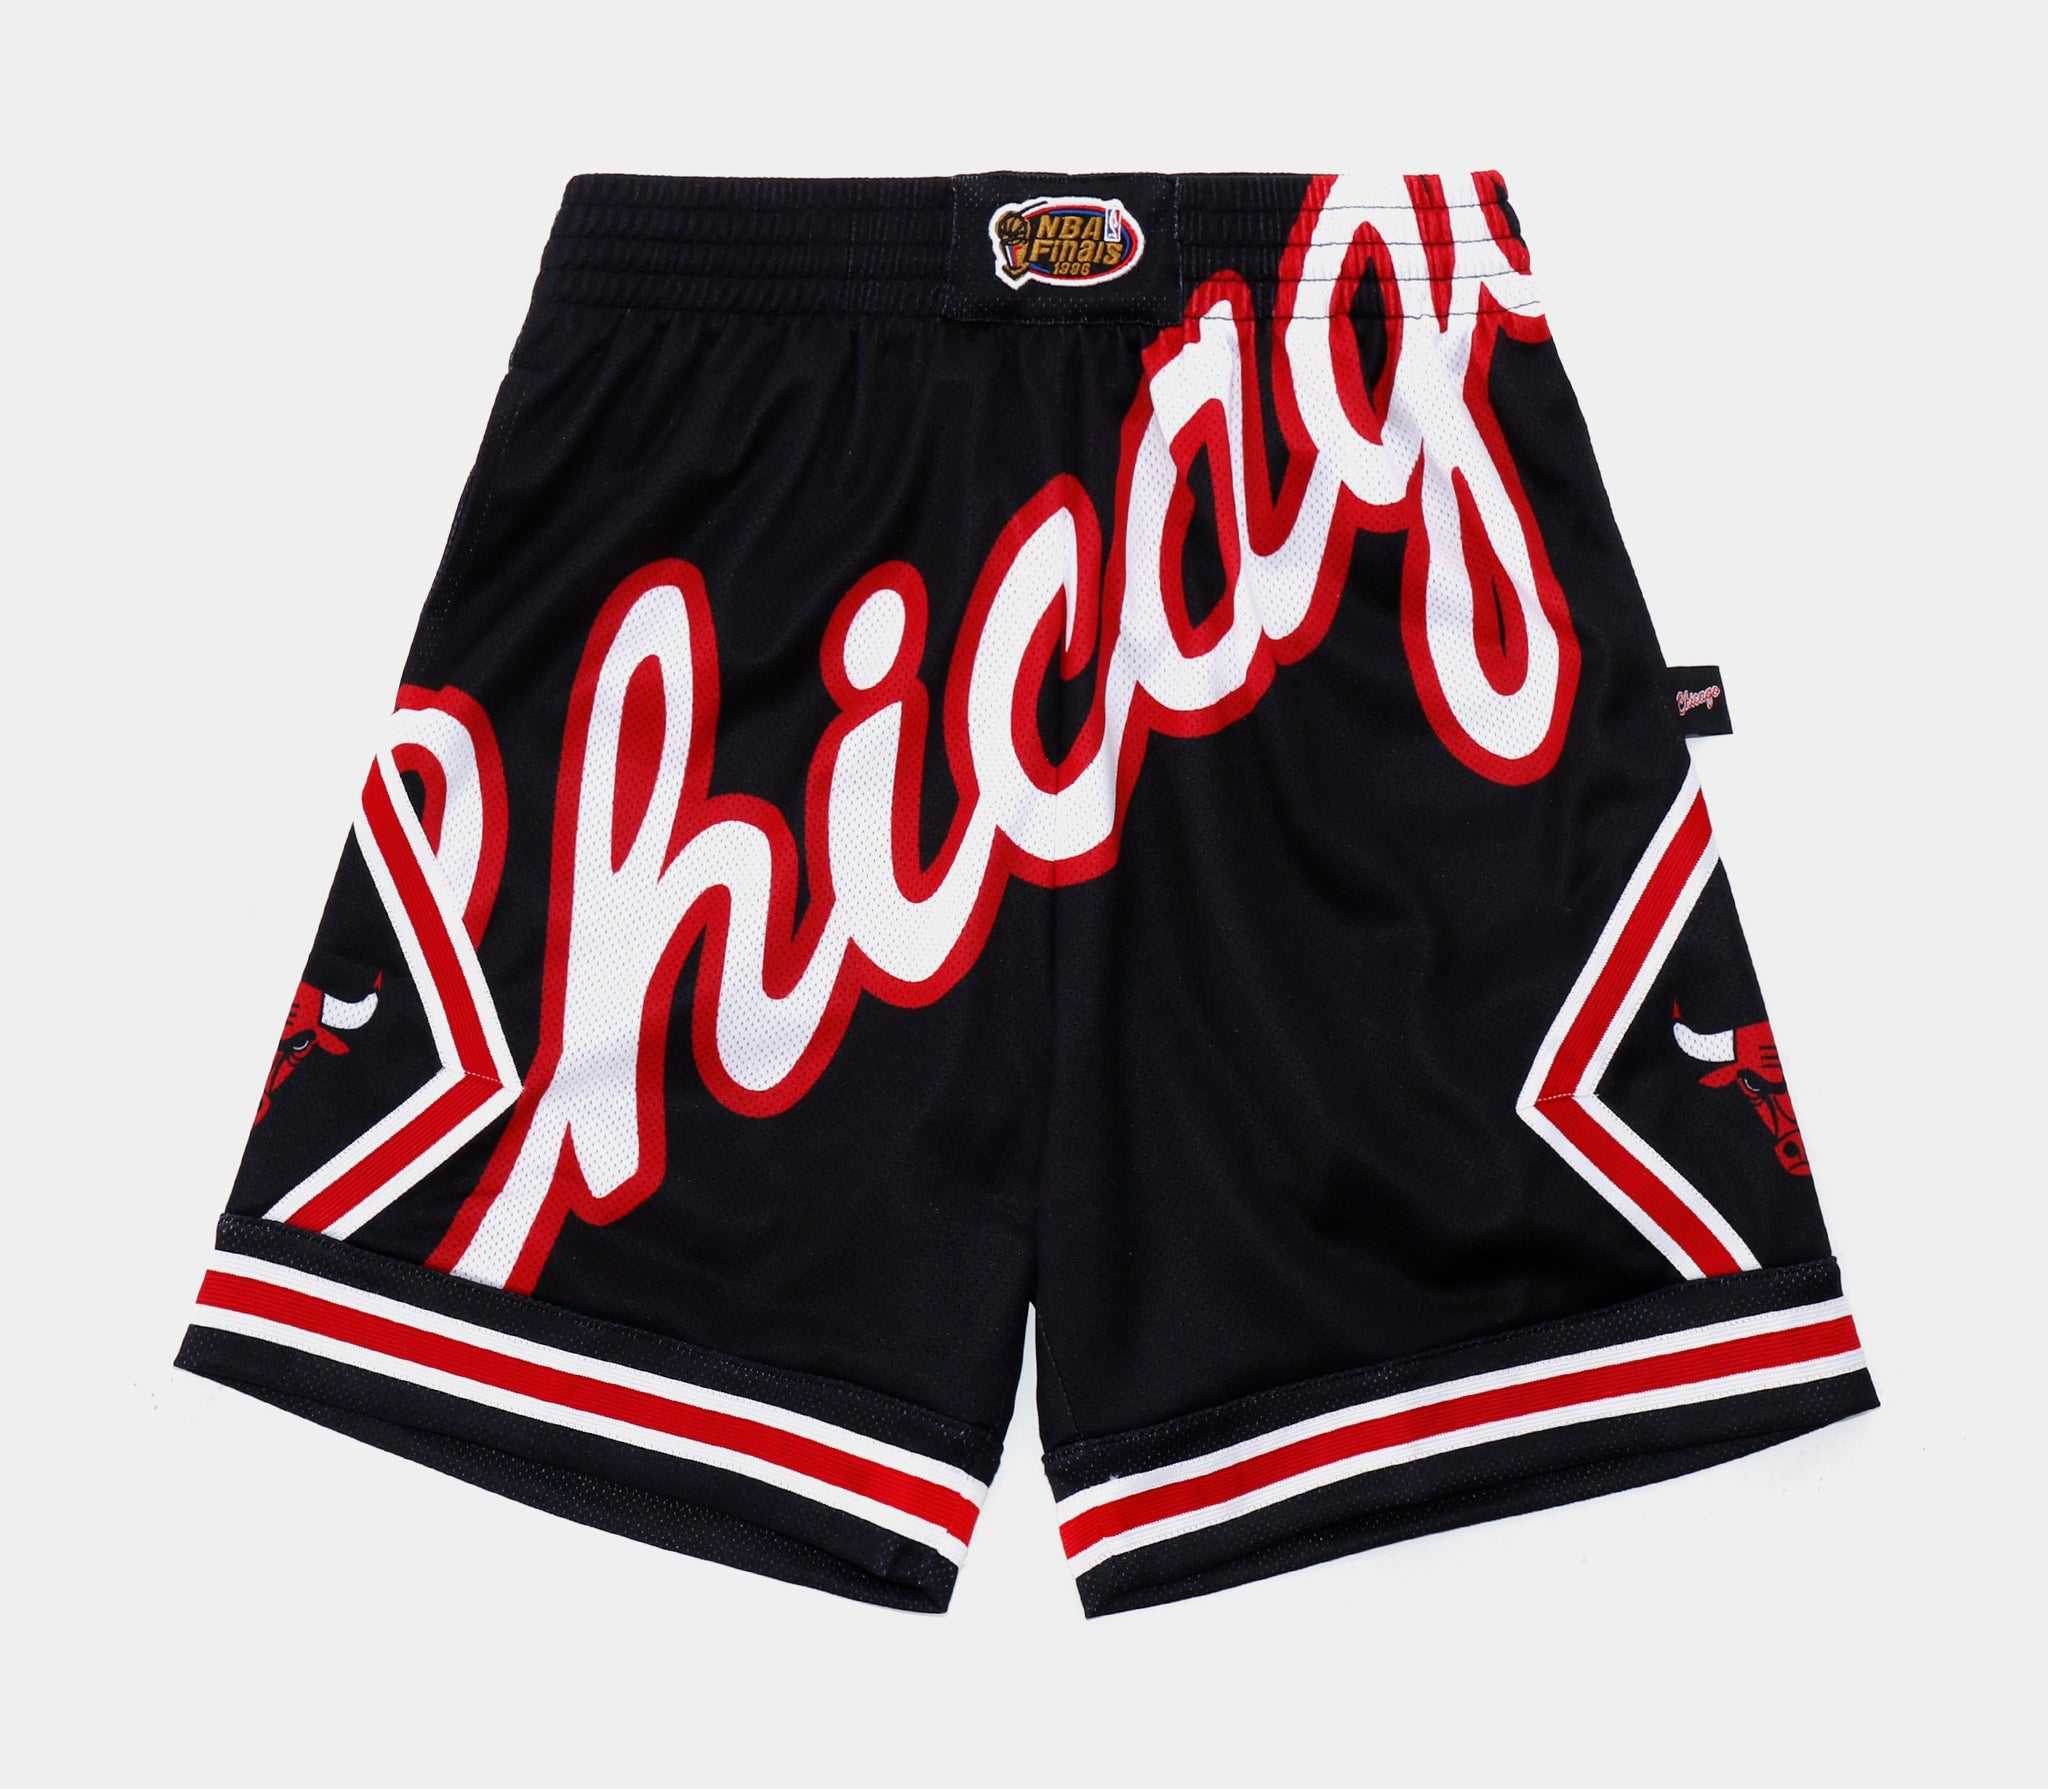 Official Chicago Bulls Mens Shorts, Basketball Shorts, Gym Shorts,  Compression Shorts